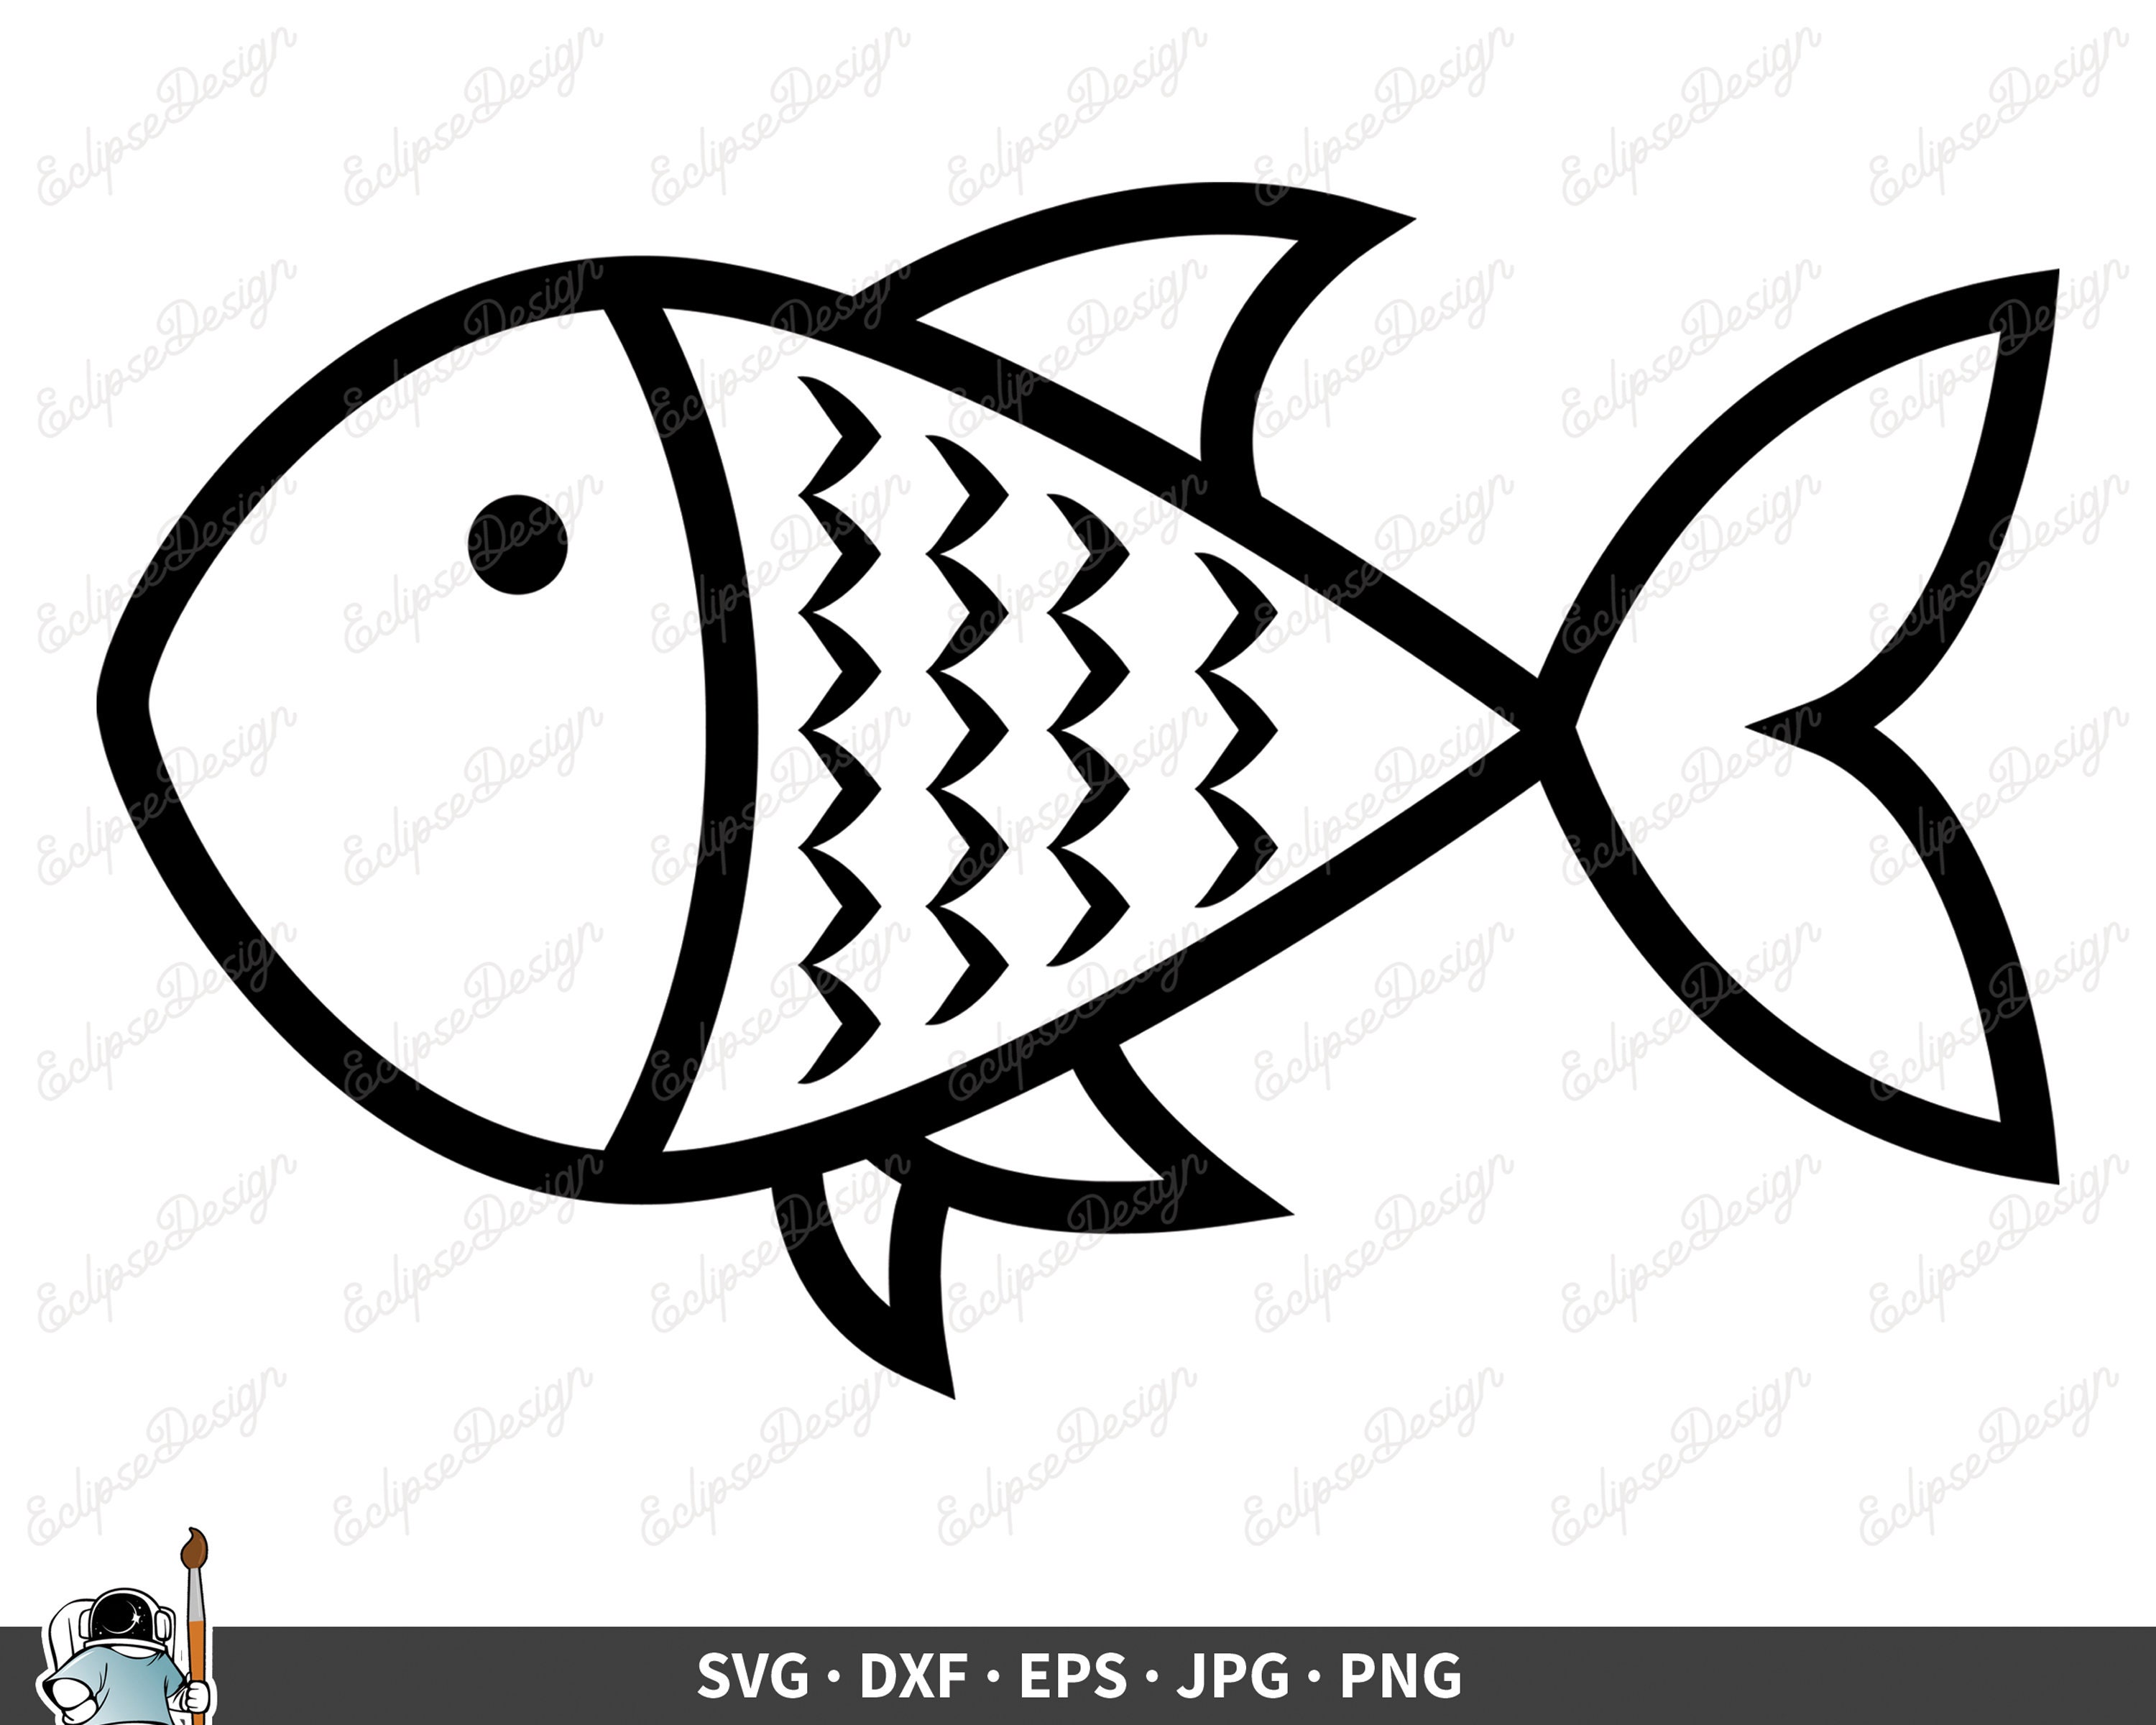 Drawn Fish SVG Fish Clip Art Vector Fish Clipart Fish Cricut - Etsy Hong  Kong